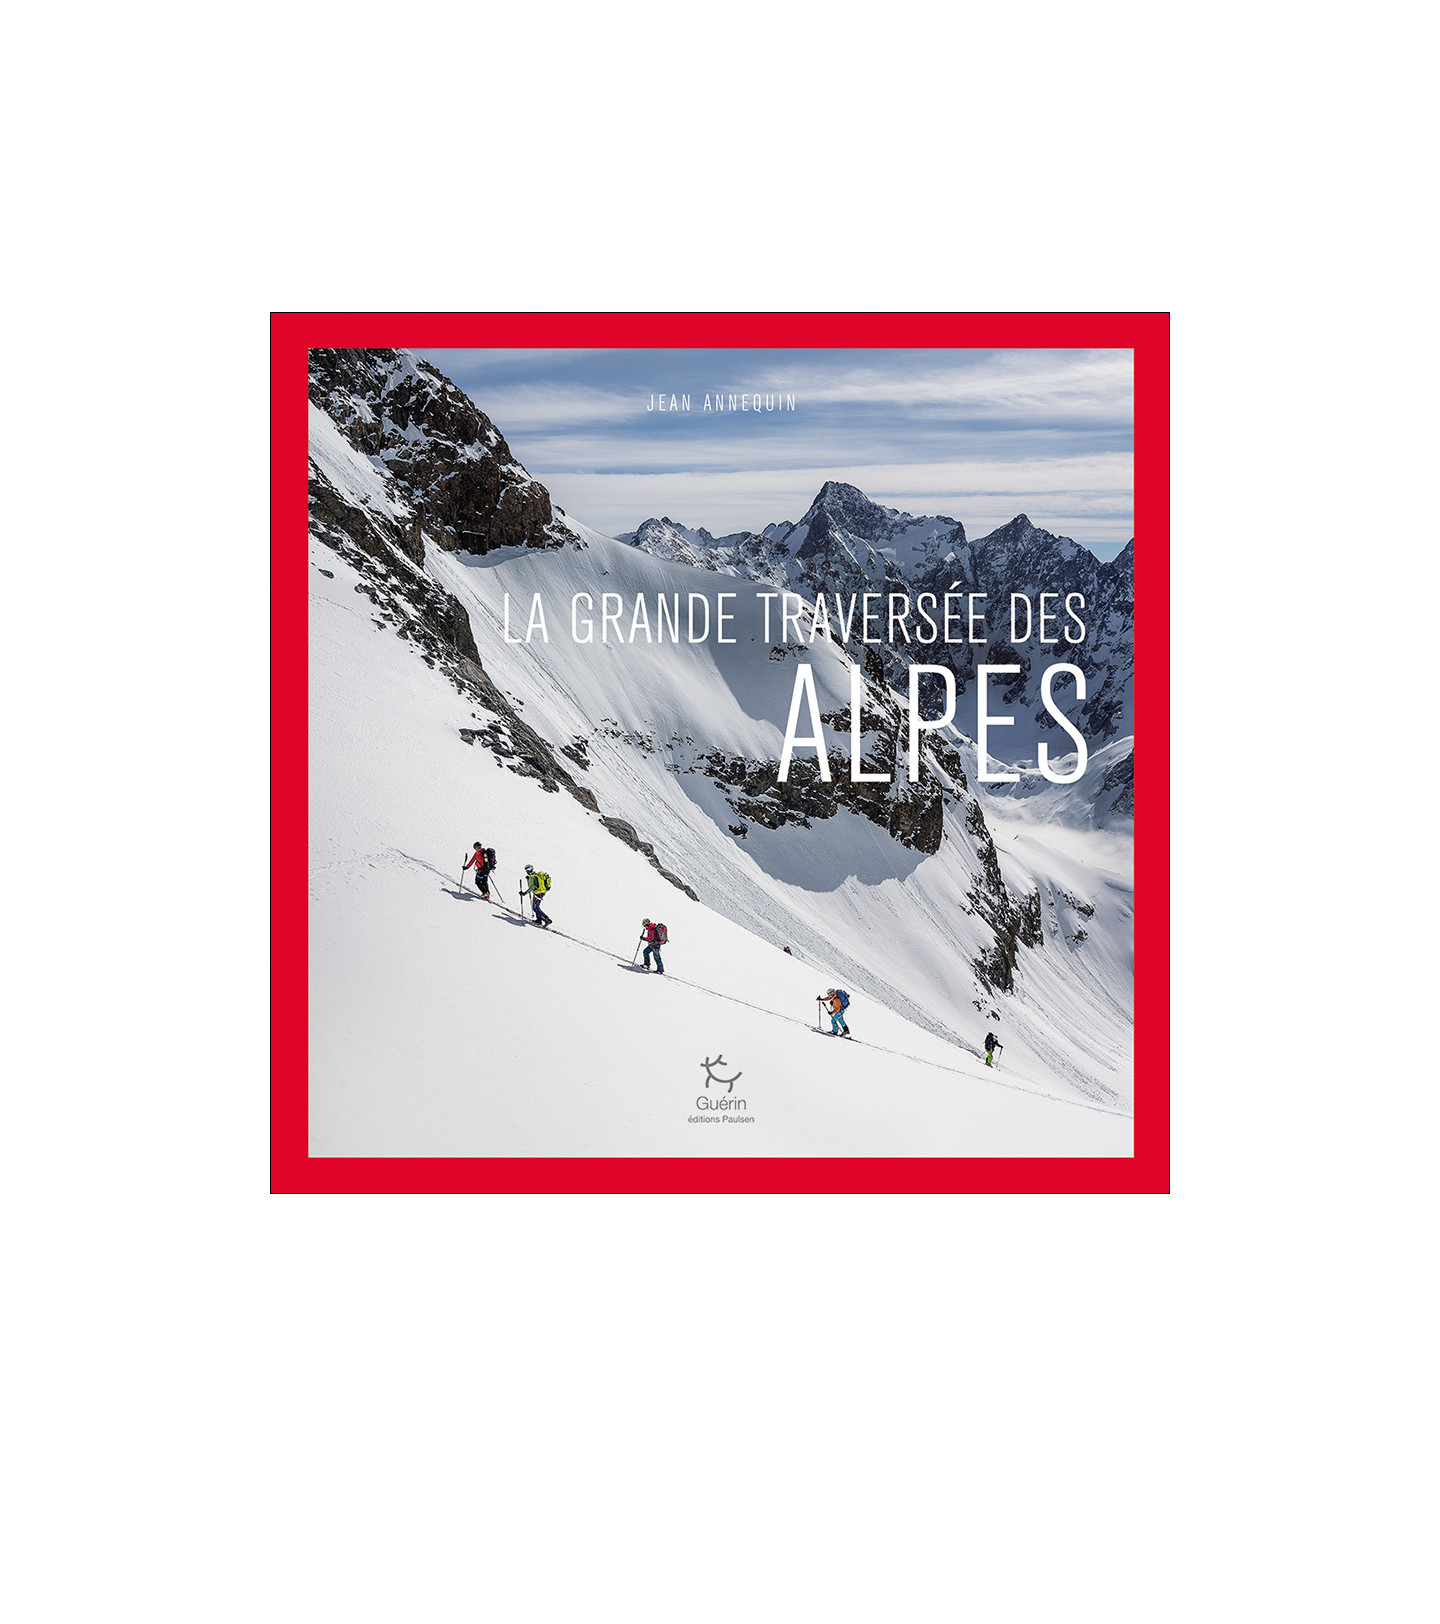 Traverser les Alpes en armure, l'incroyable aventure de passionnés